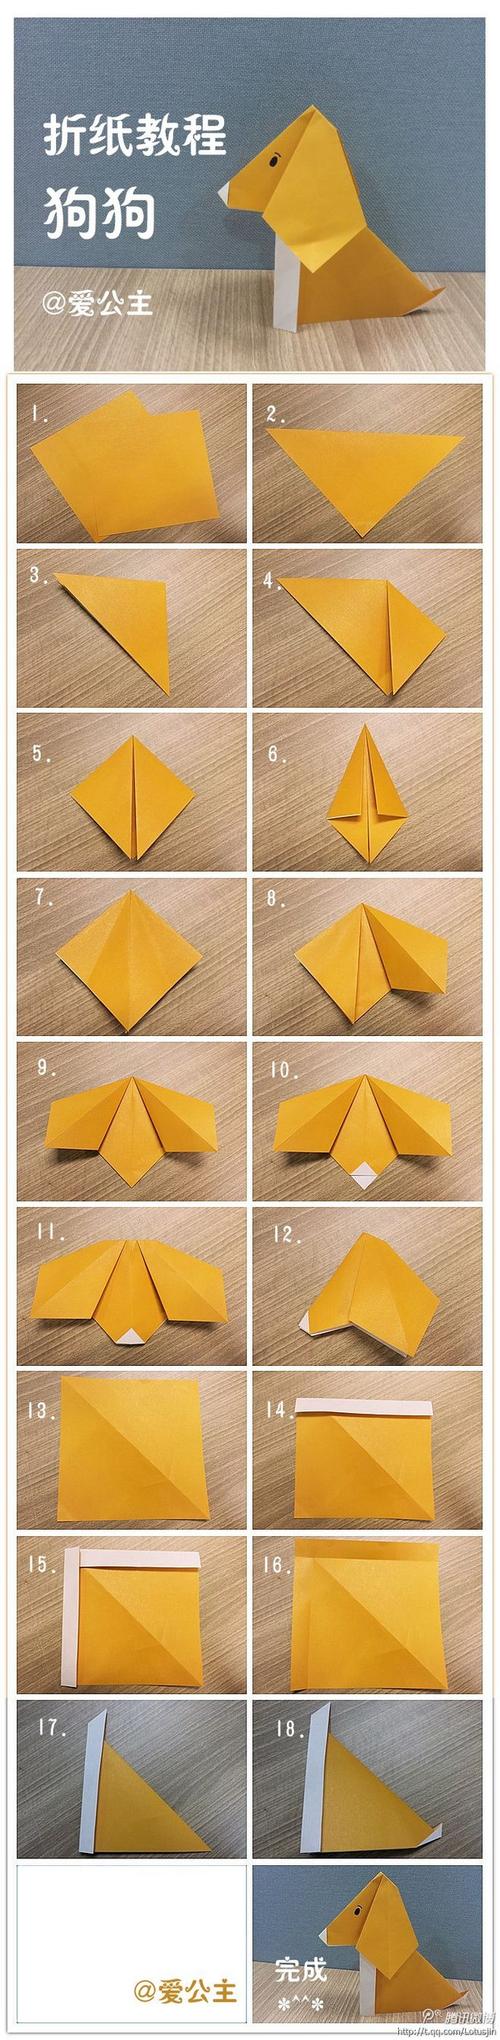 手工折纸折纸教程图解